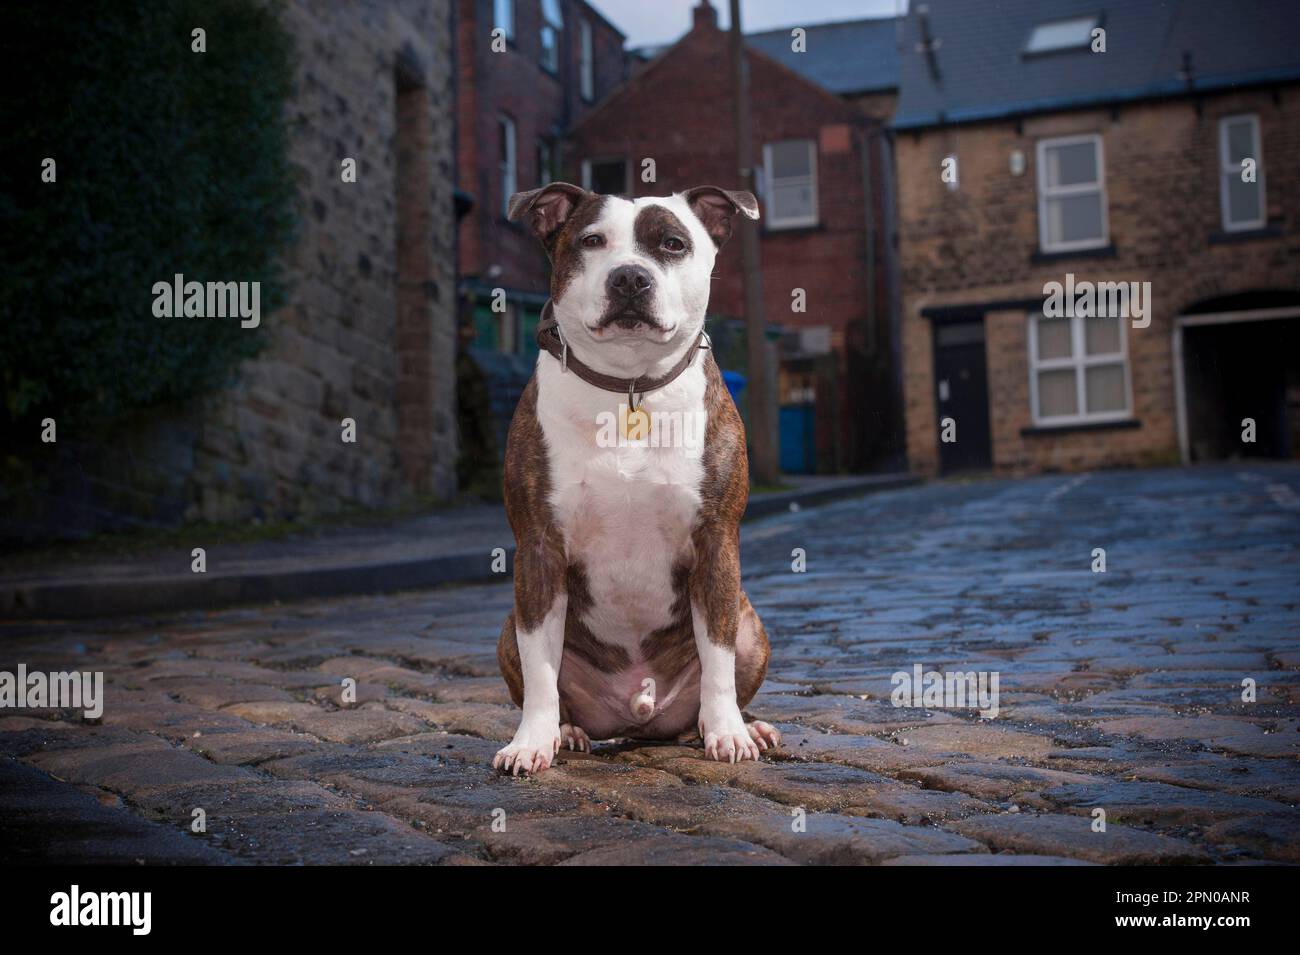 Cane domestico, Staffordshire Bull Terrier, adulto maschio, con colletto e etichetta di identificazione, seduto sulla strada, Sheffield, South Yorkshire Foto Stock